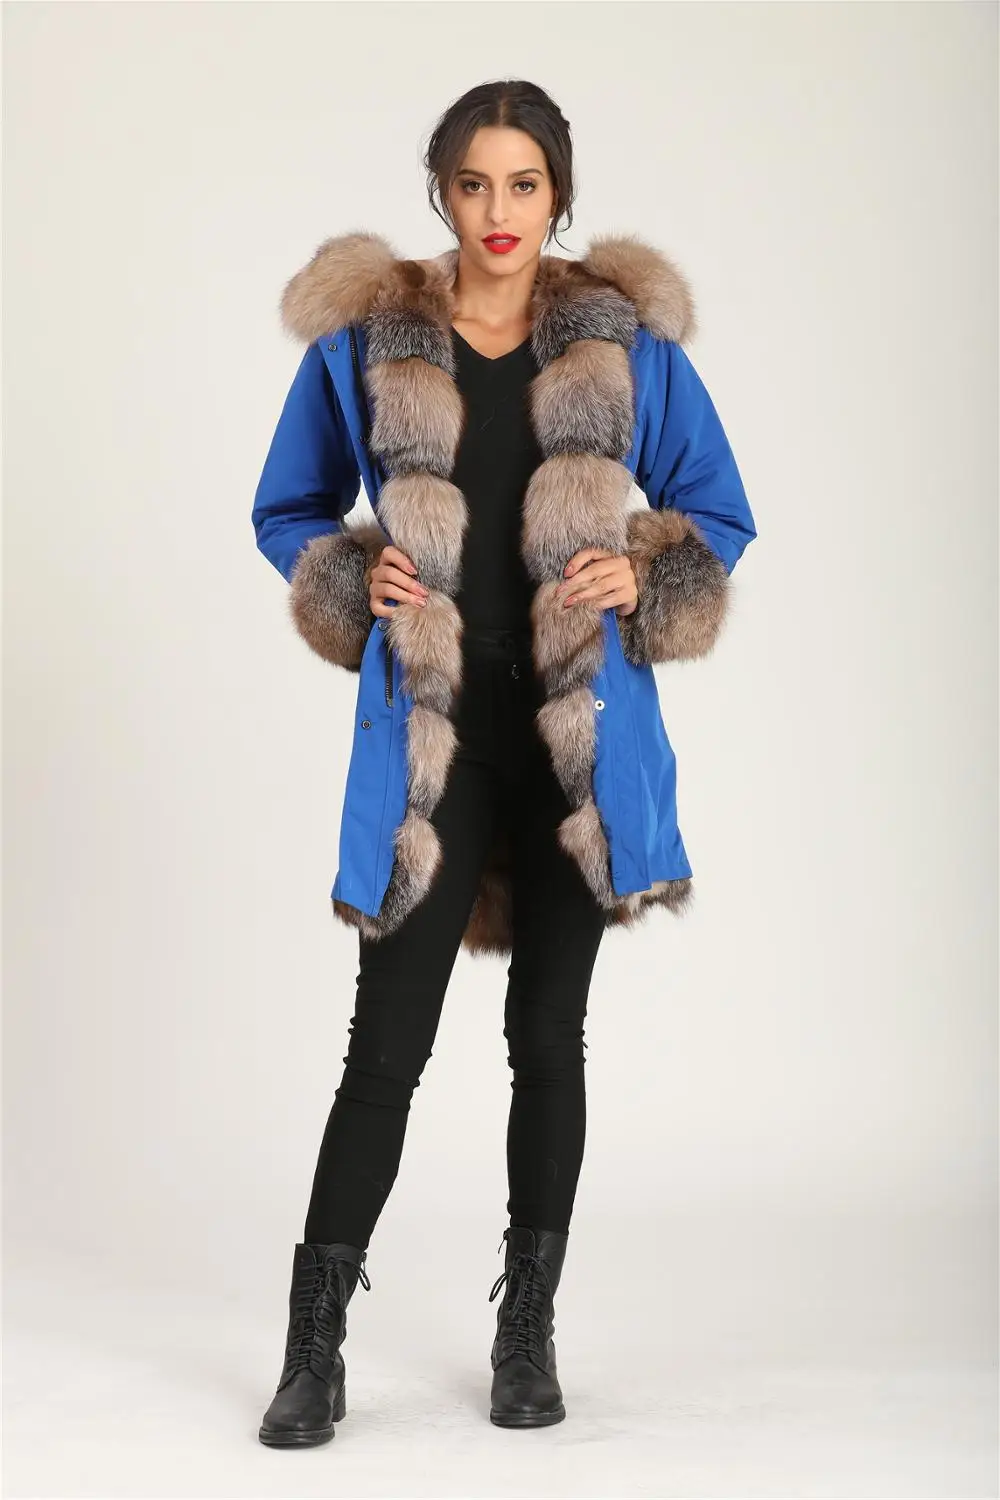 Женское зимнее пальто в винтажном стиле,, Nobel Cool, блестящая синяя куртка в шотландскую клетку с лисьим мехом, парка с манжетами